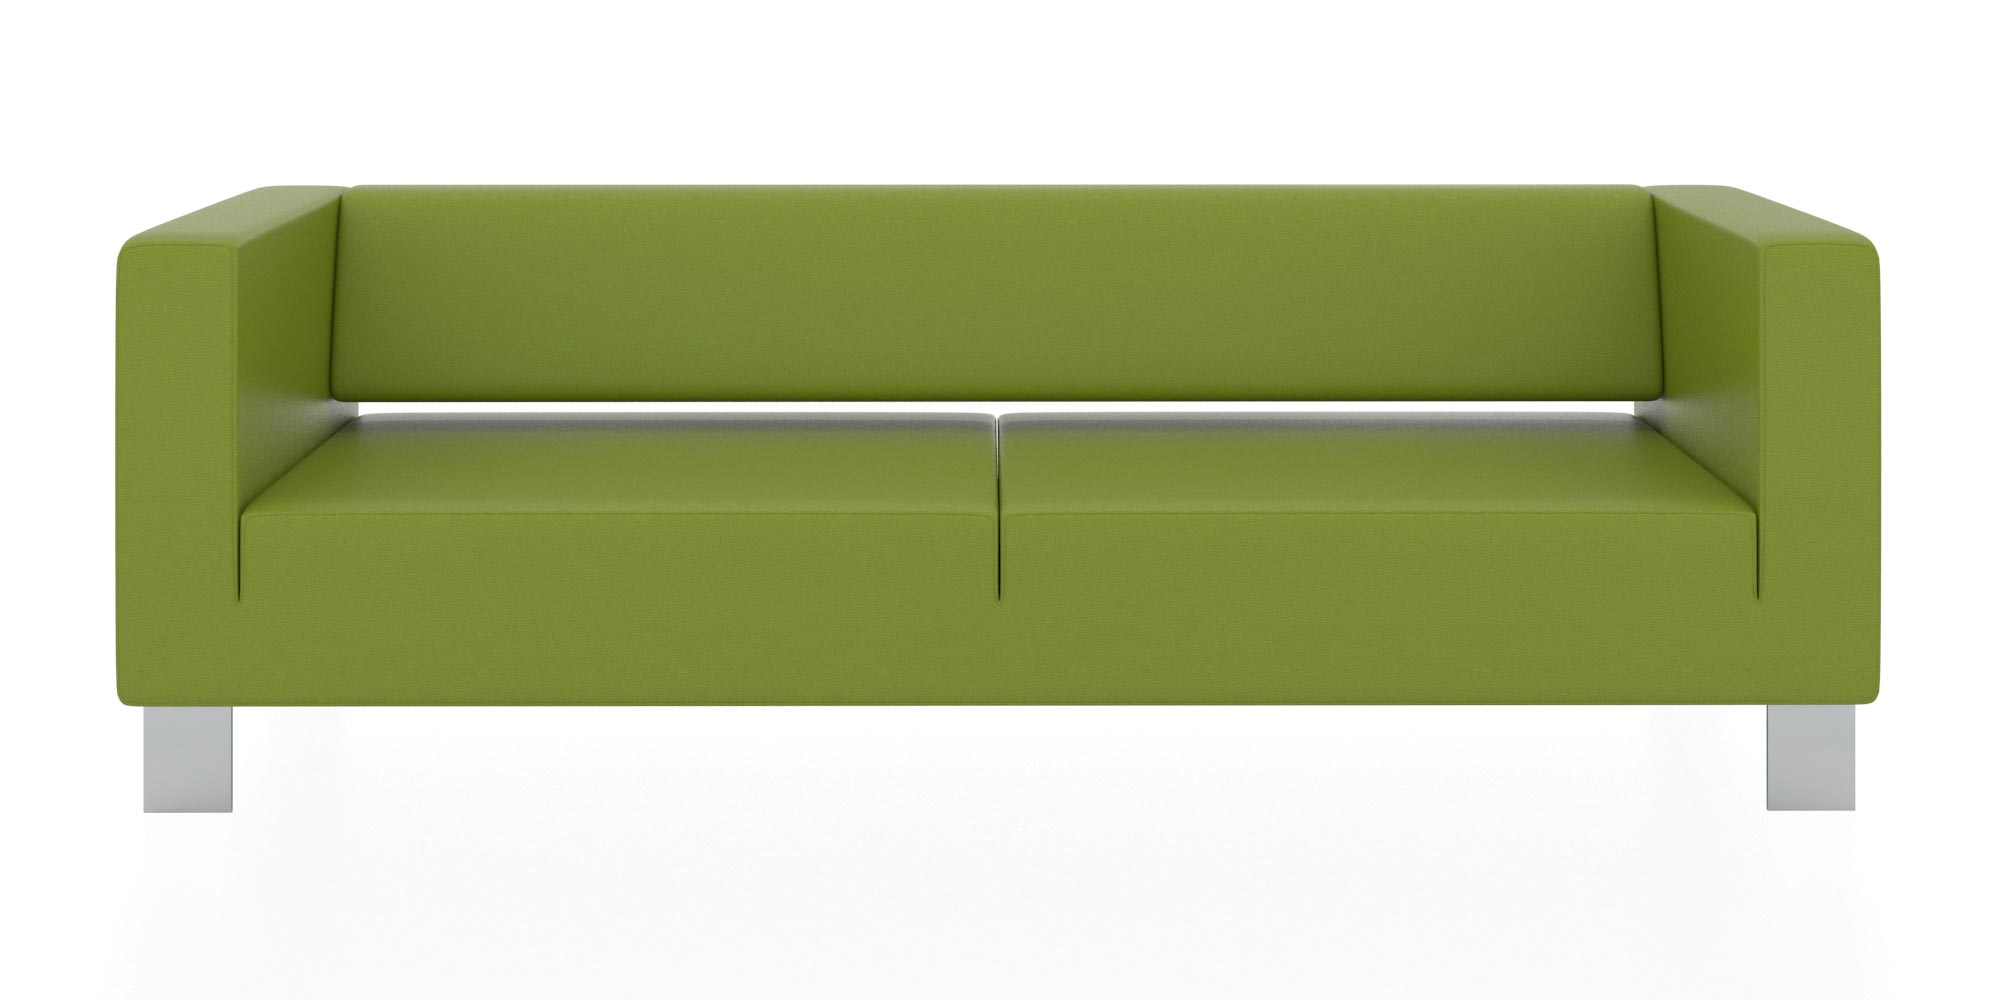 Современный двухместный диван с обивкой из кожзама. Цвет зеленый(euroline 1131).